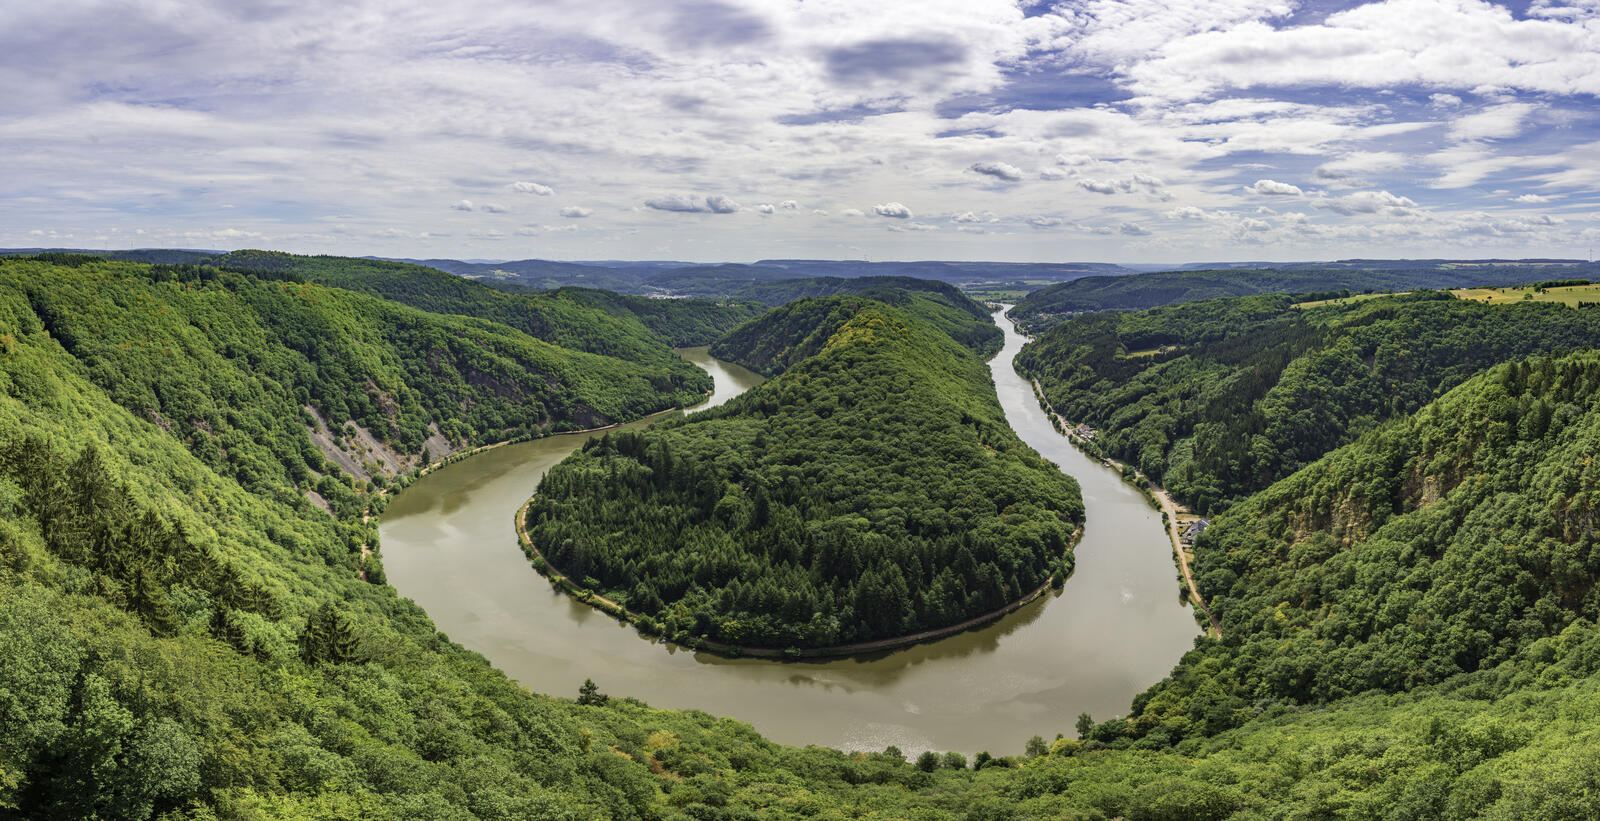 Изгиб реки сканворд. Излучина реки Саар. Река Саар. Река Саар Германия. У излучины реки Ялмы.